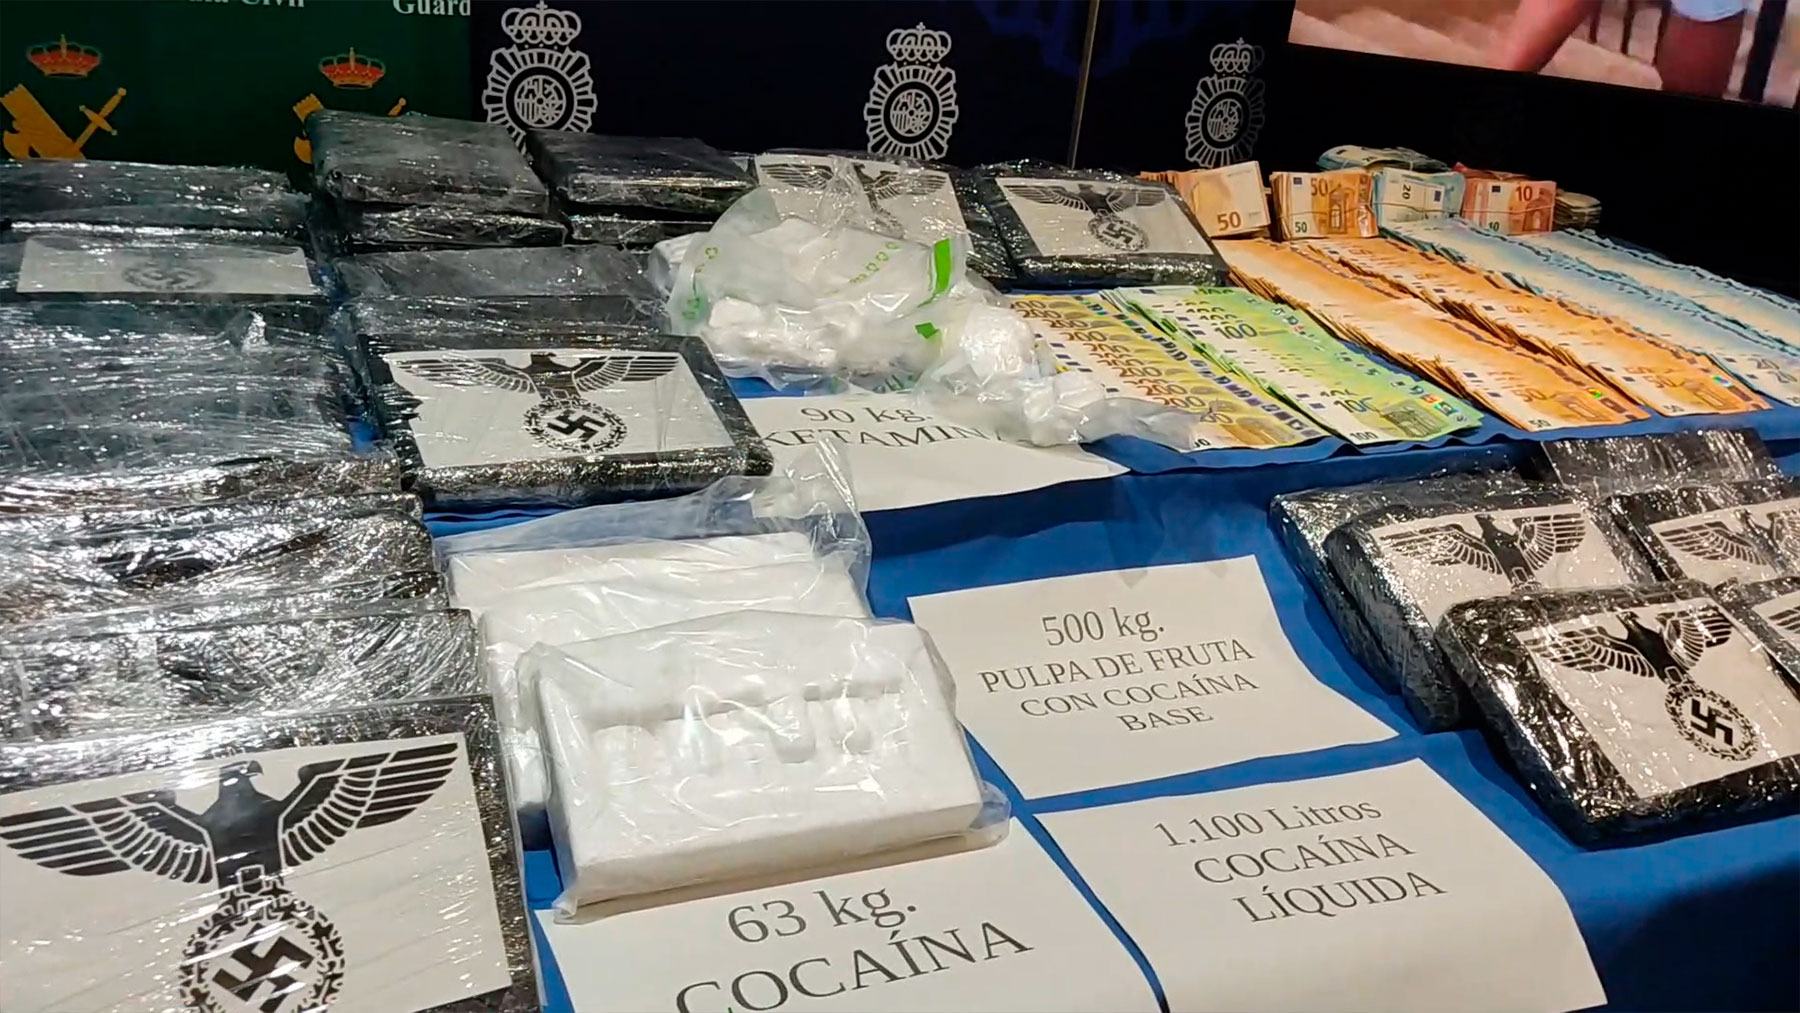 Policía Nacional y Guardia Civil desmantelan la mayor organización de tráfico de cocaína de Barcelona a Mallorca.